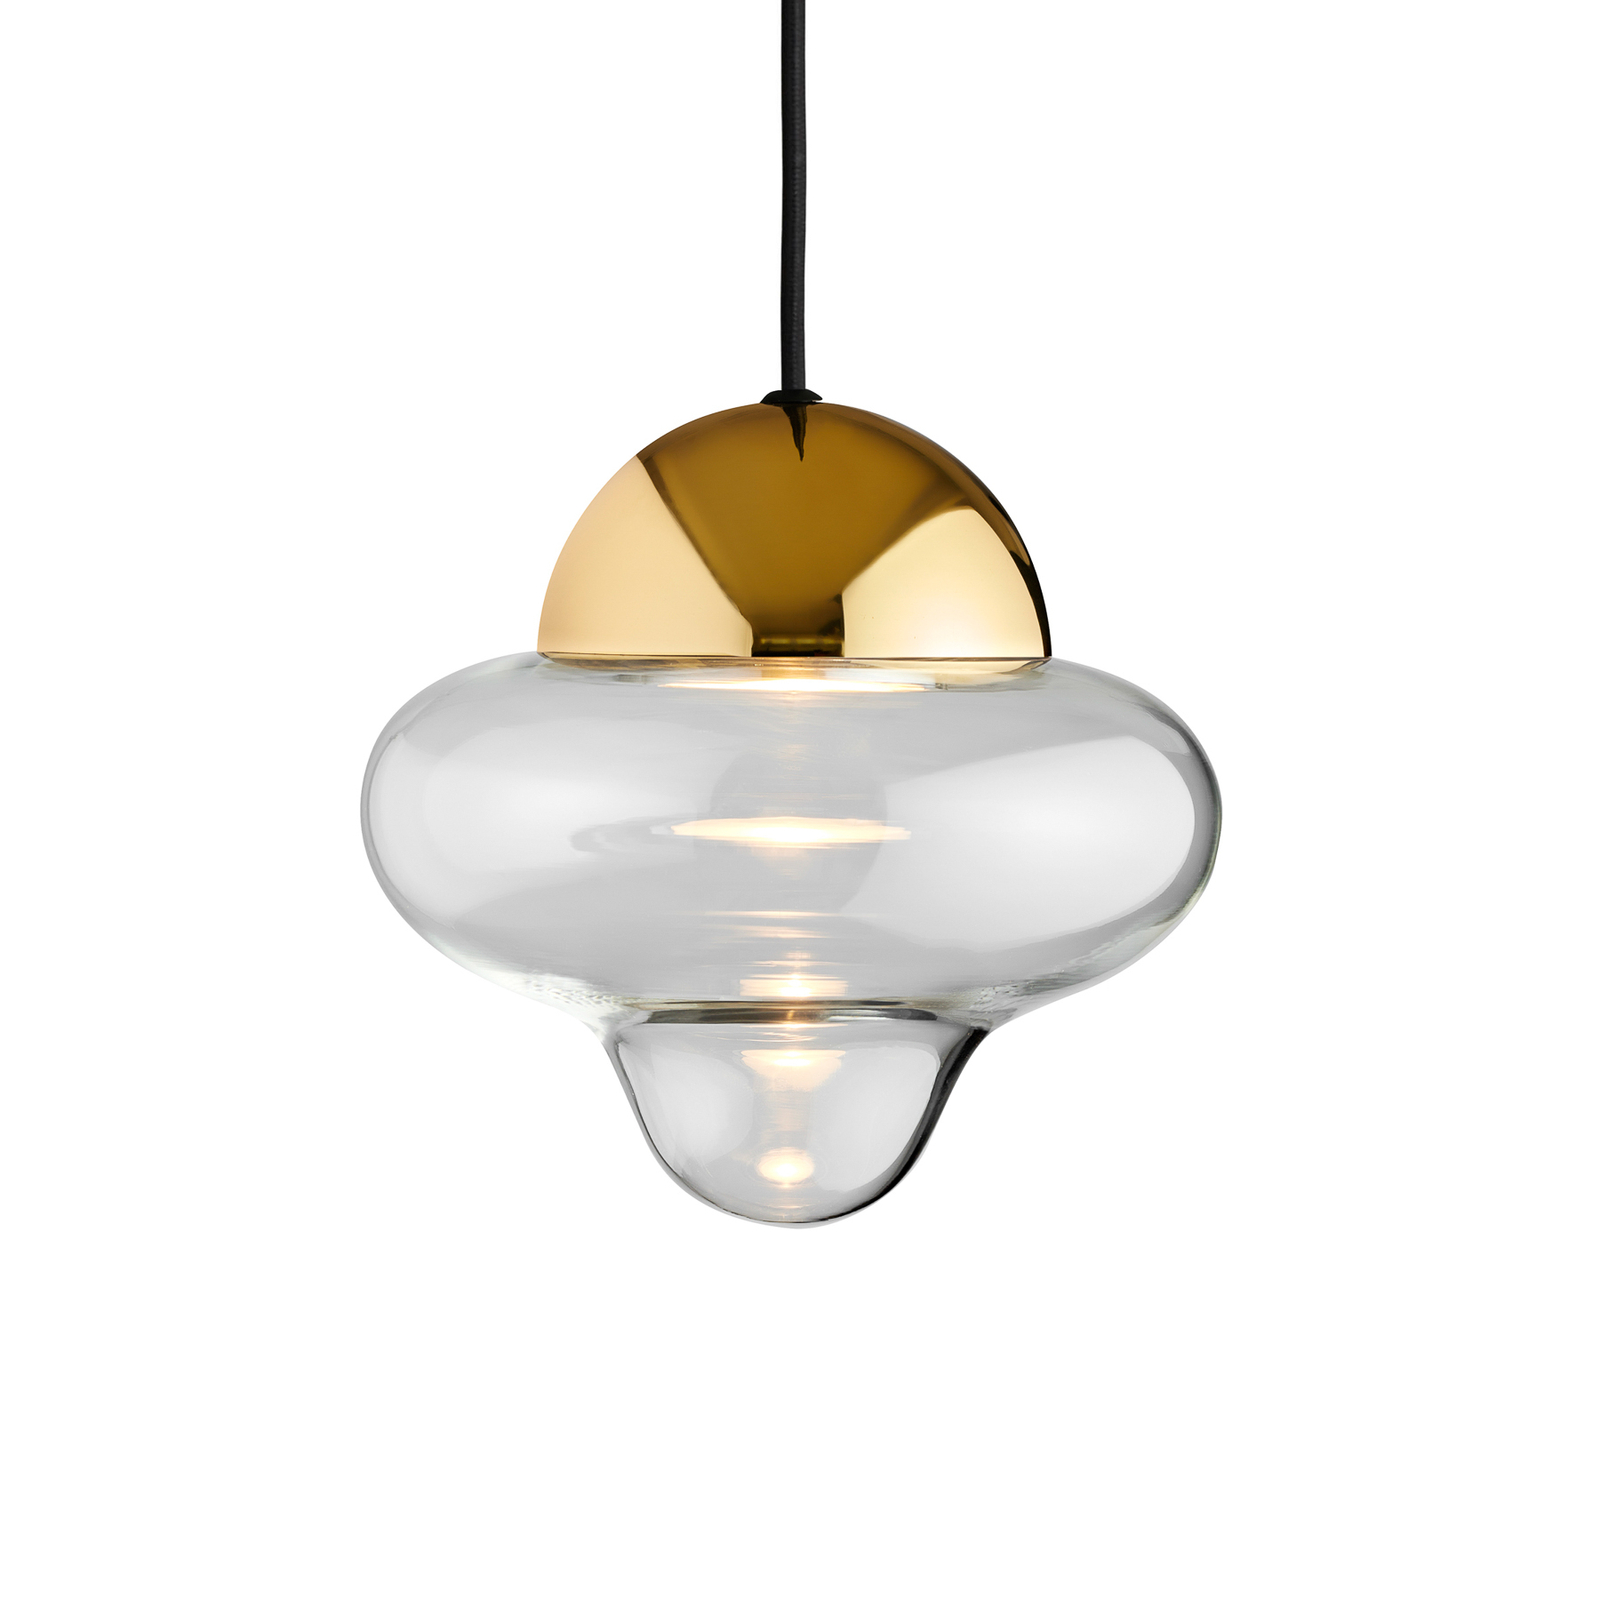 Nutty hanglamp, helder/goudkleurig, Ø 18,5 cm, glas